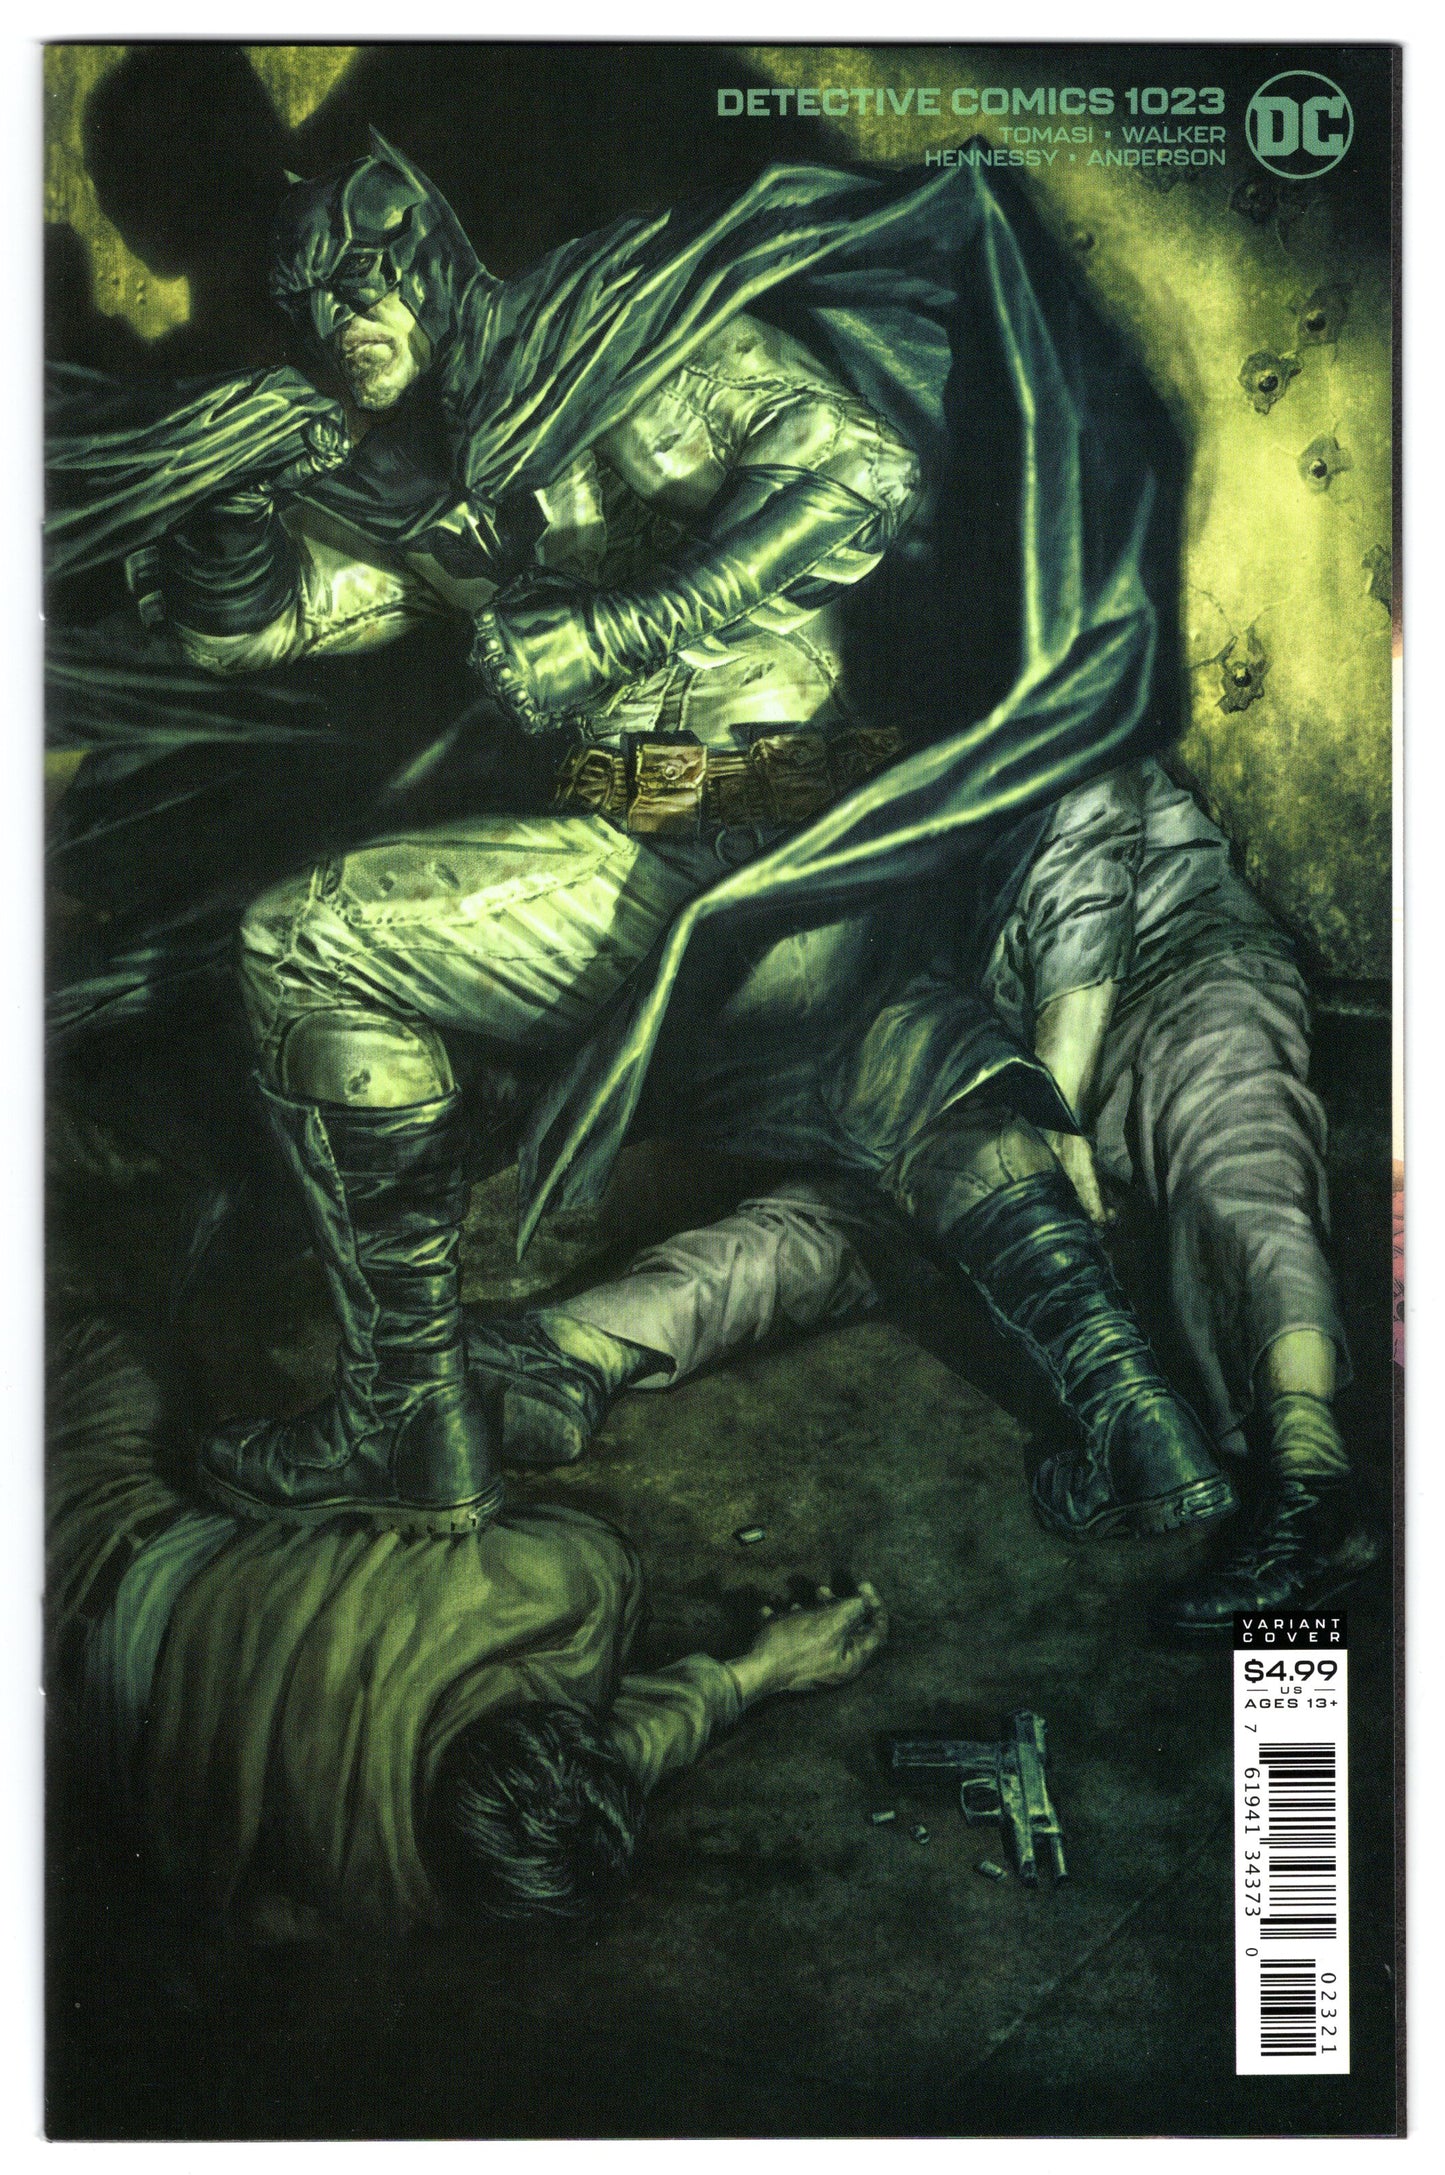 Detective Comics Batman - Issue #1023 "Variant Cover" (Sept. 2020 - DC Comics) NM+